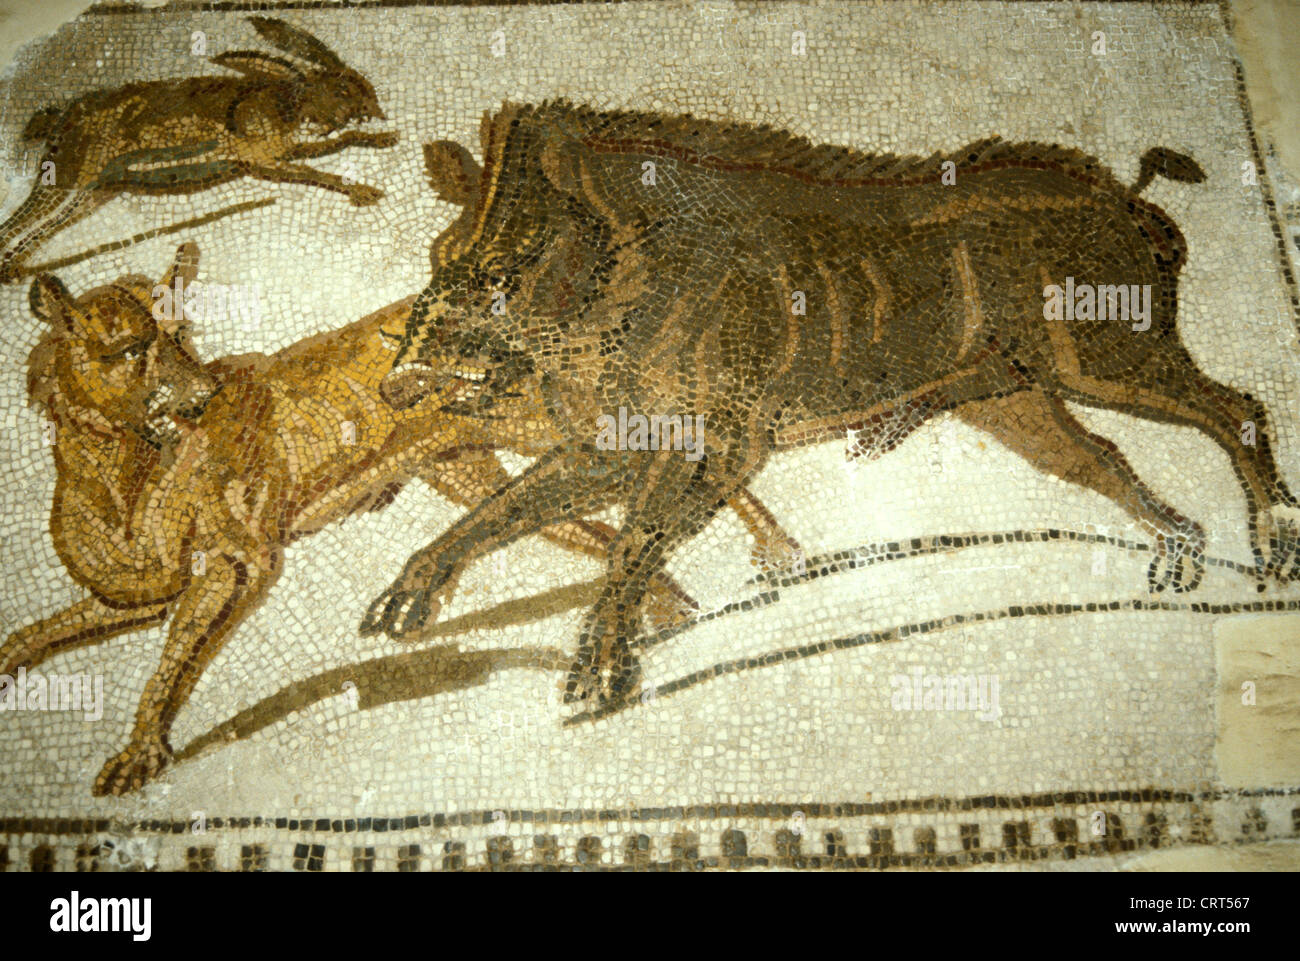 Römisches Mosaik aus dem frühen 3. Jahrhundert v. Chr., das eine Jagd auf Wildschweine und Hasen darstellt. Aus Hadrumetum (Sousse), Tunesien. Das Bardo Museum, Tunis, Tunesien Stockfoto